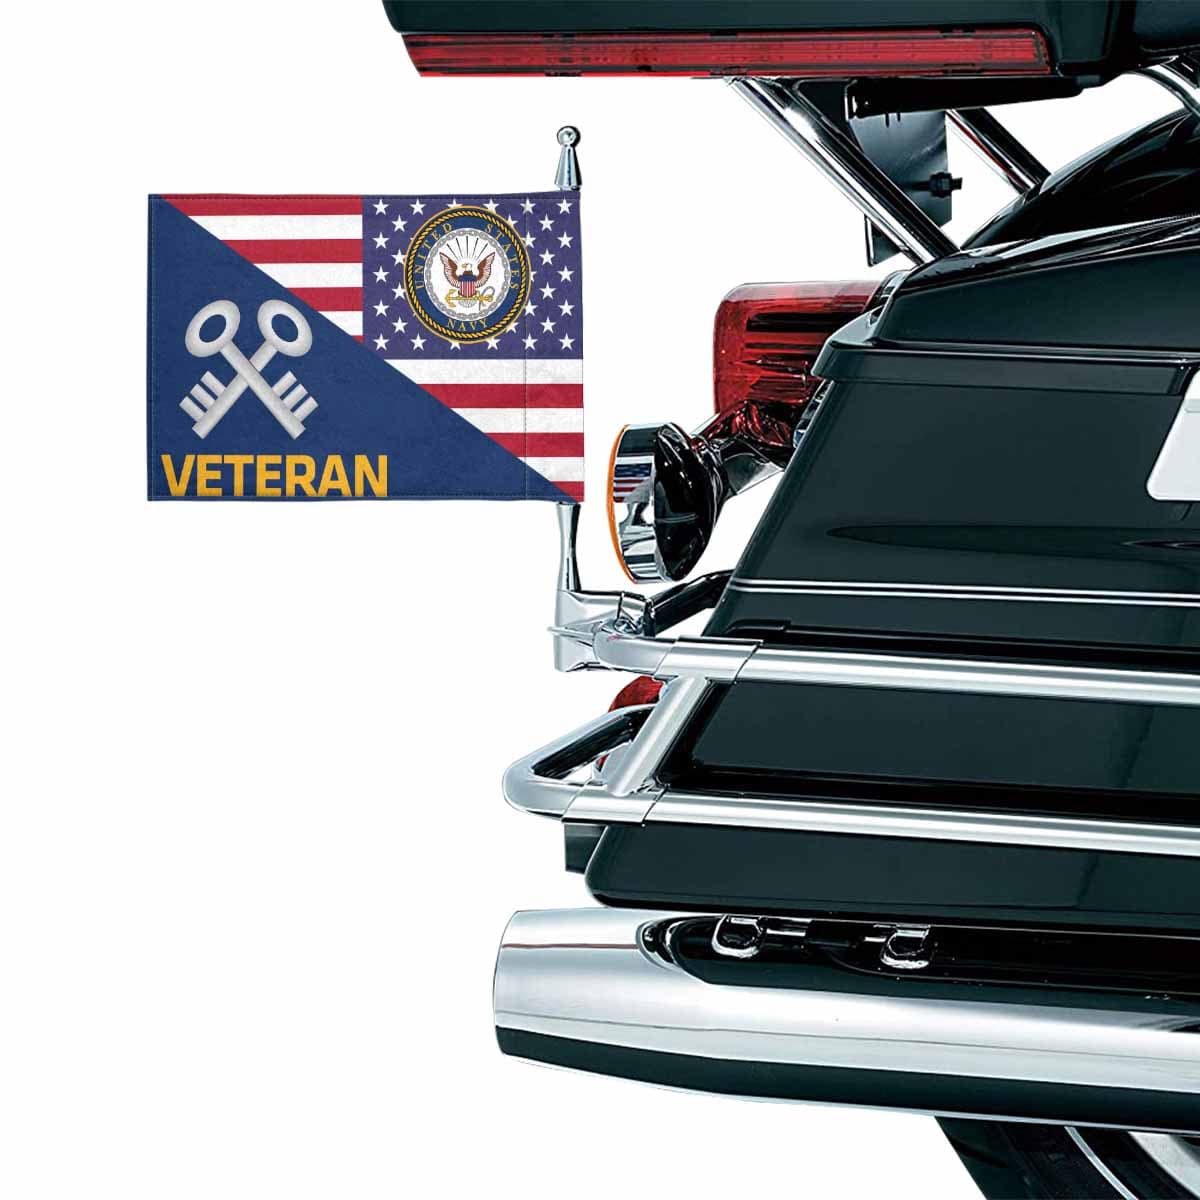 US Navy Storekeeper Navy SK Veteran Motorcycle Flag 9" x 6" Twin-Side Printing D01-MotorcycleFlag-Navy-Veterans Nation